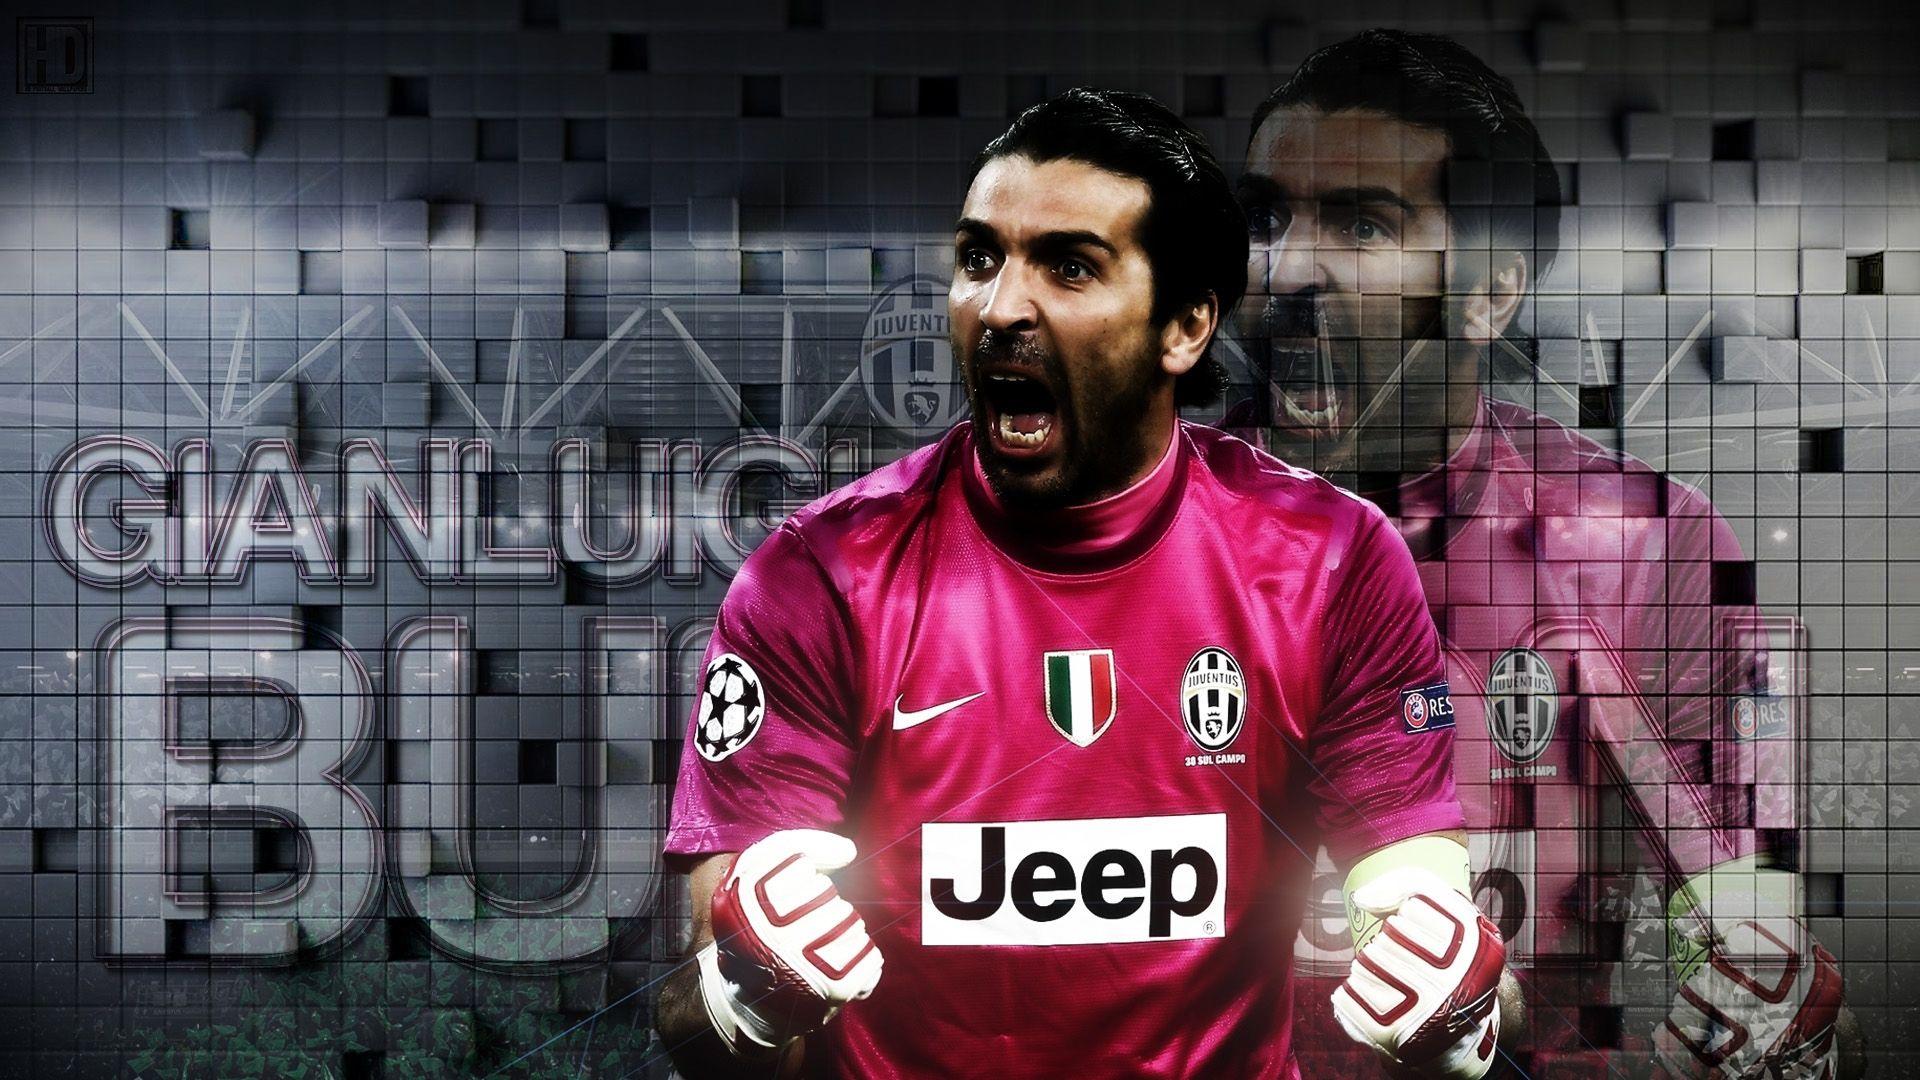 The goalkeeper of Juventus Gianluigi Buffon wallpaper and image